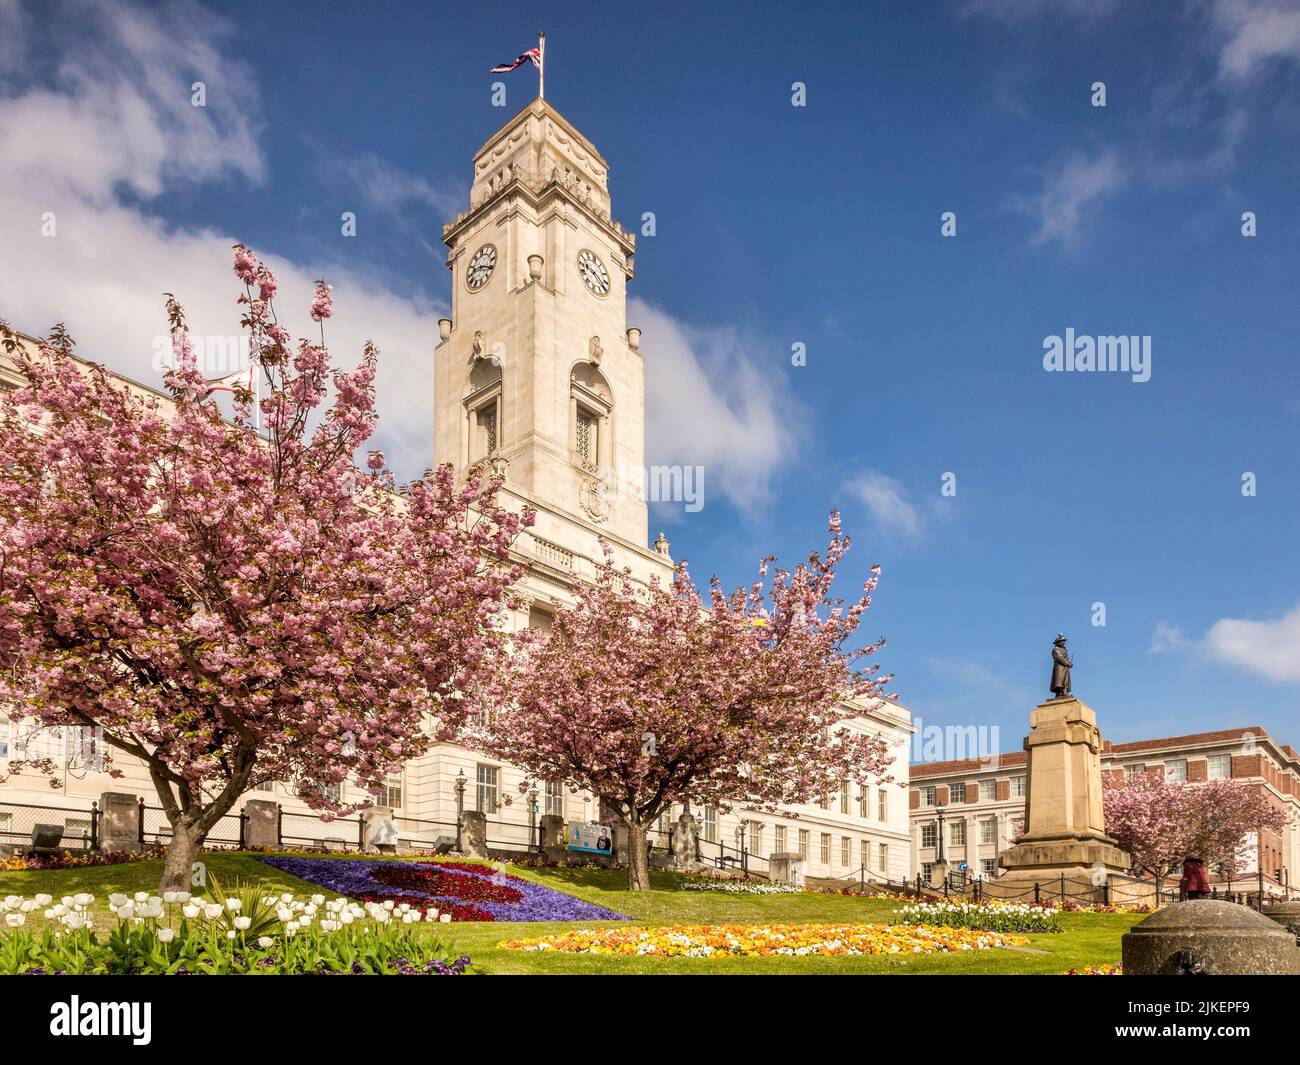 24. April 2022: Barnsley, South Yorkshire - Barnsley Town Hall an einem schönen Frühlingstag, mit blauem Himmel und blühenden Gärten. Stockfoto